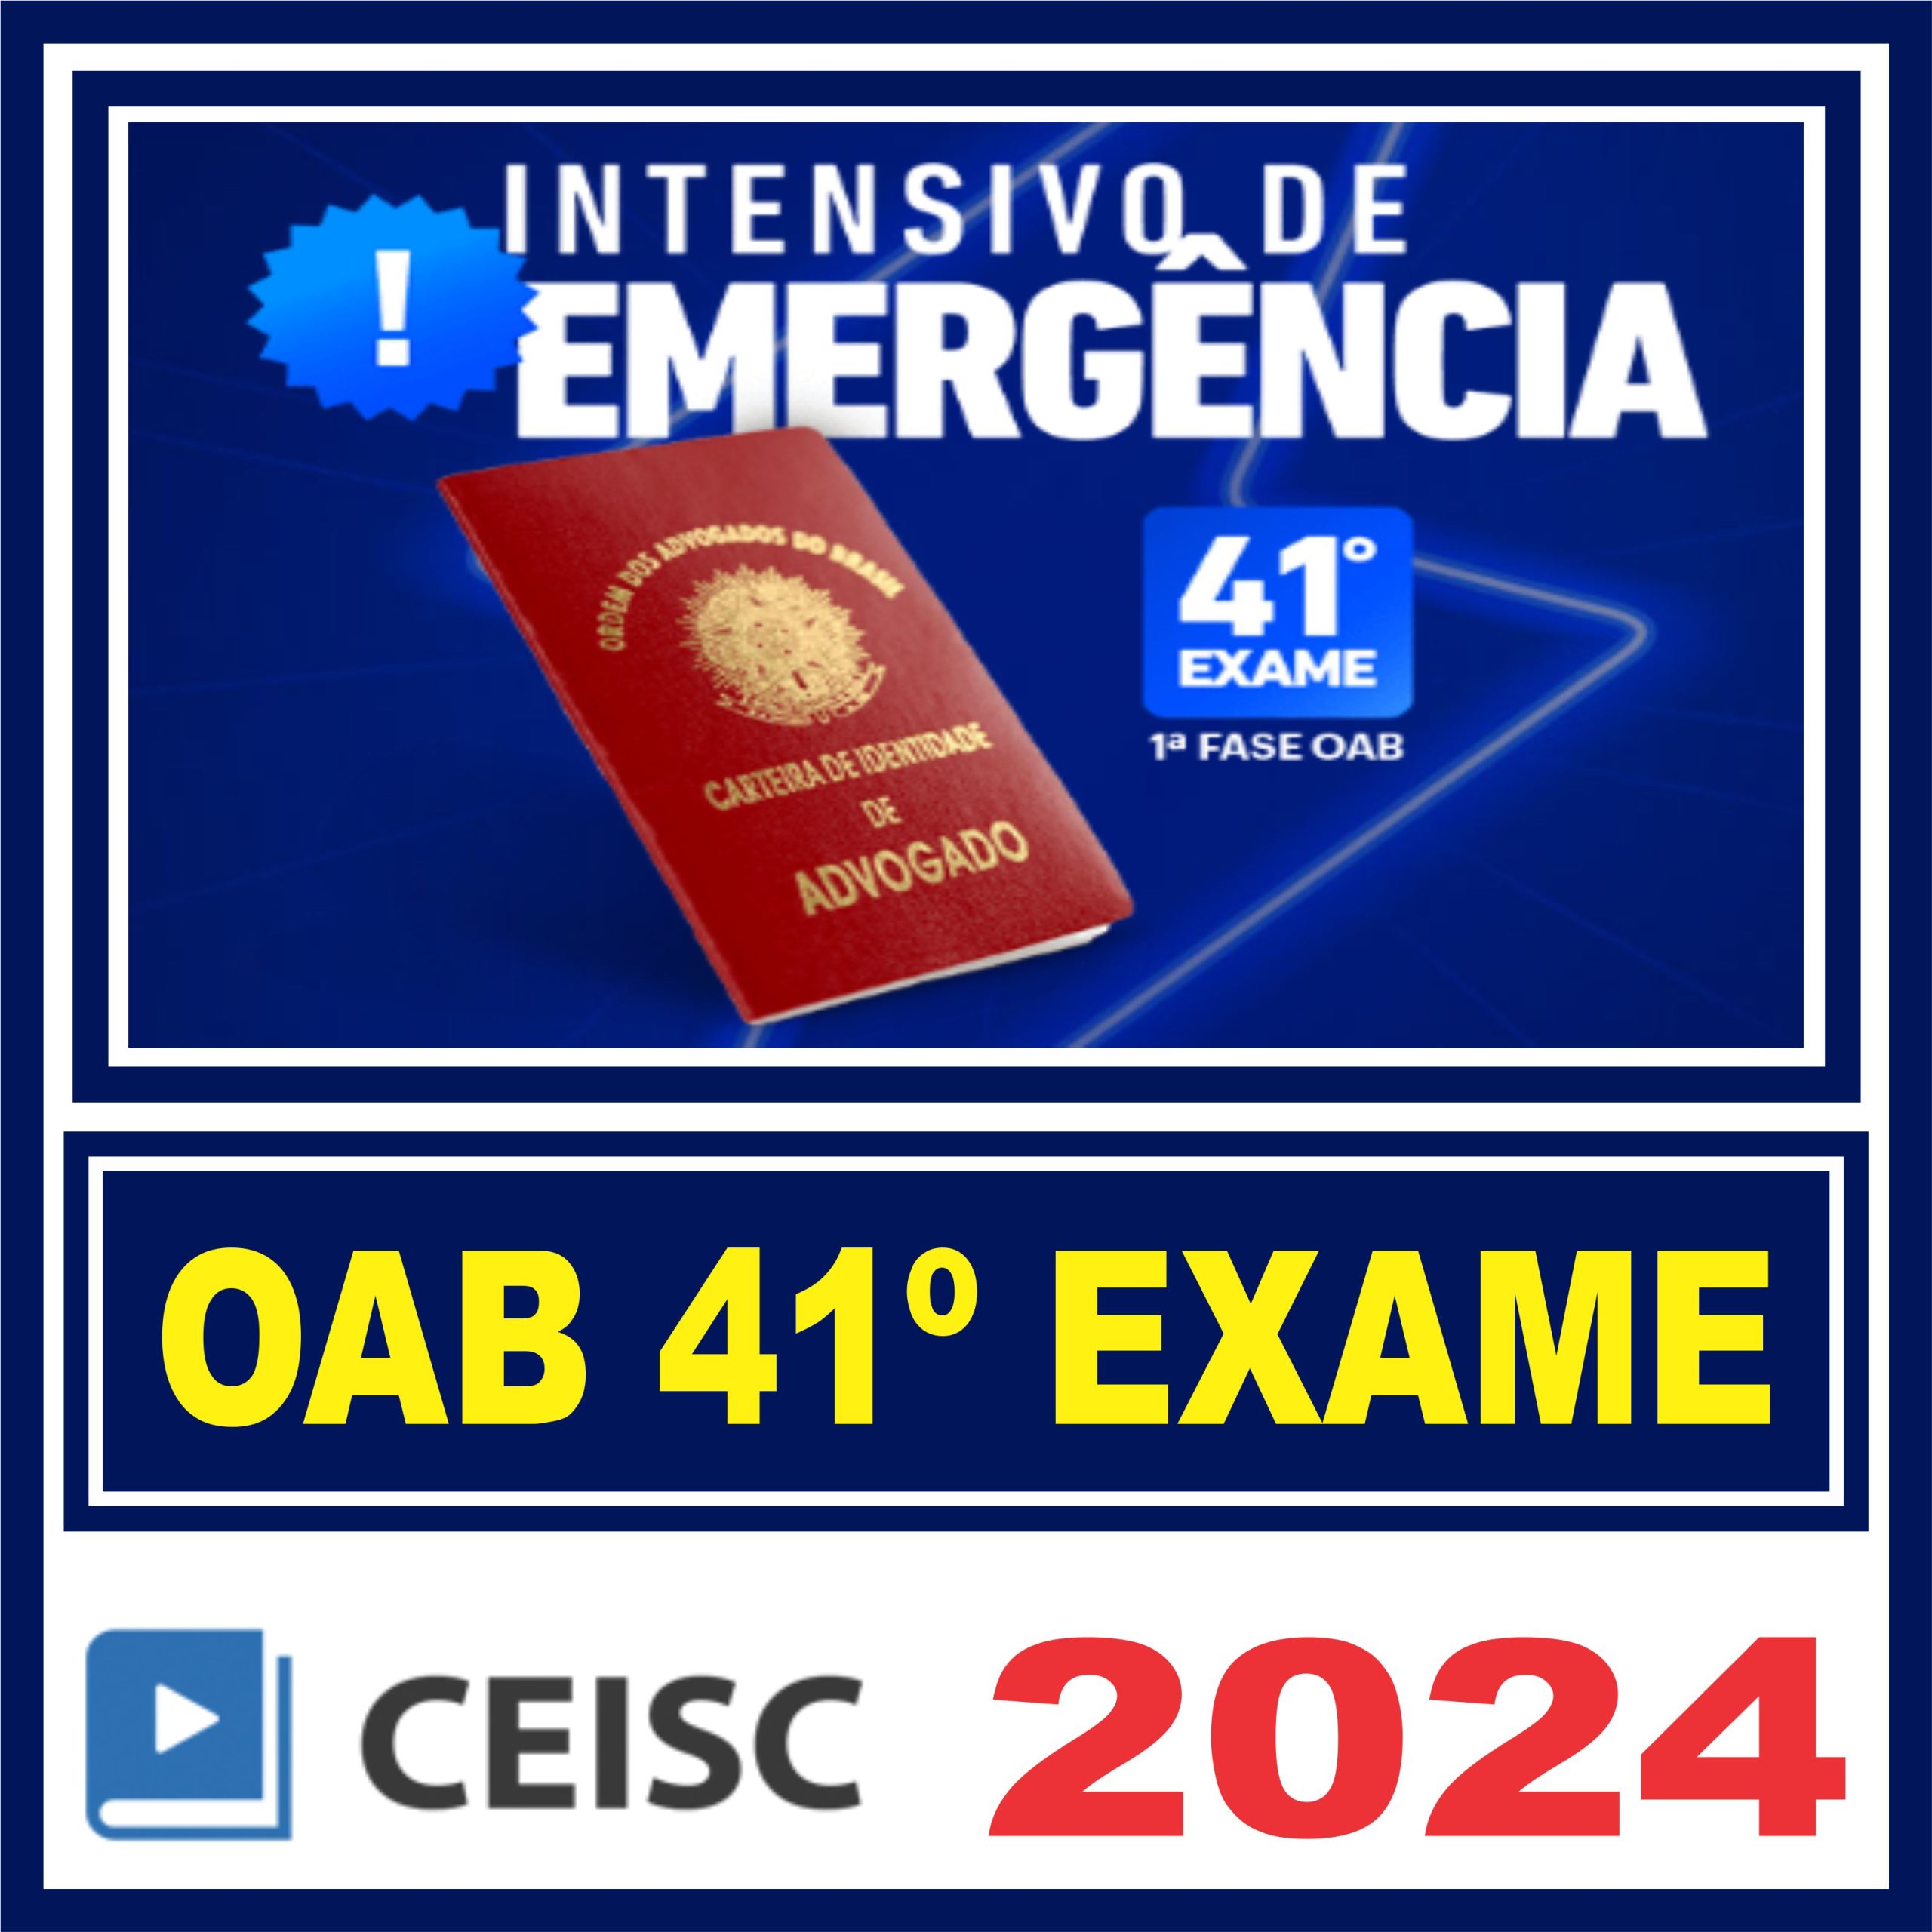 oab-emergencia-41